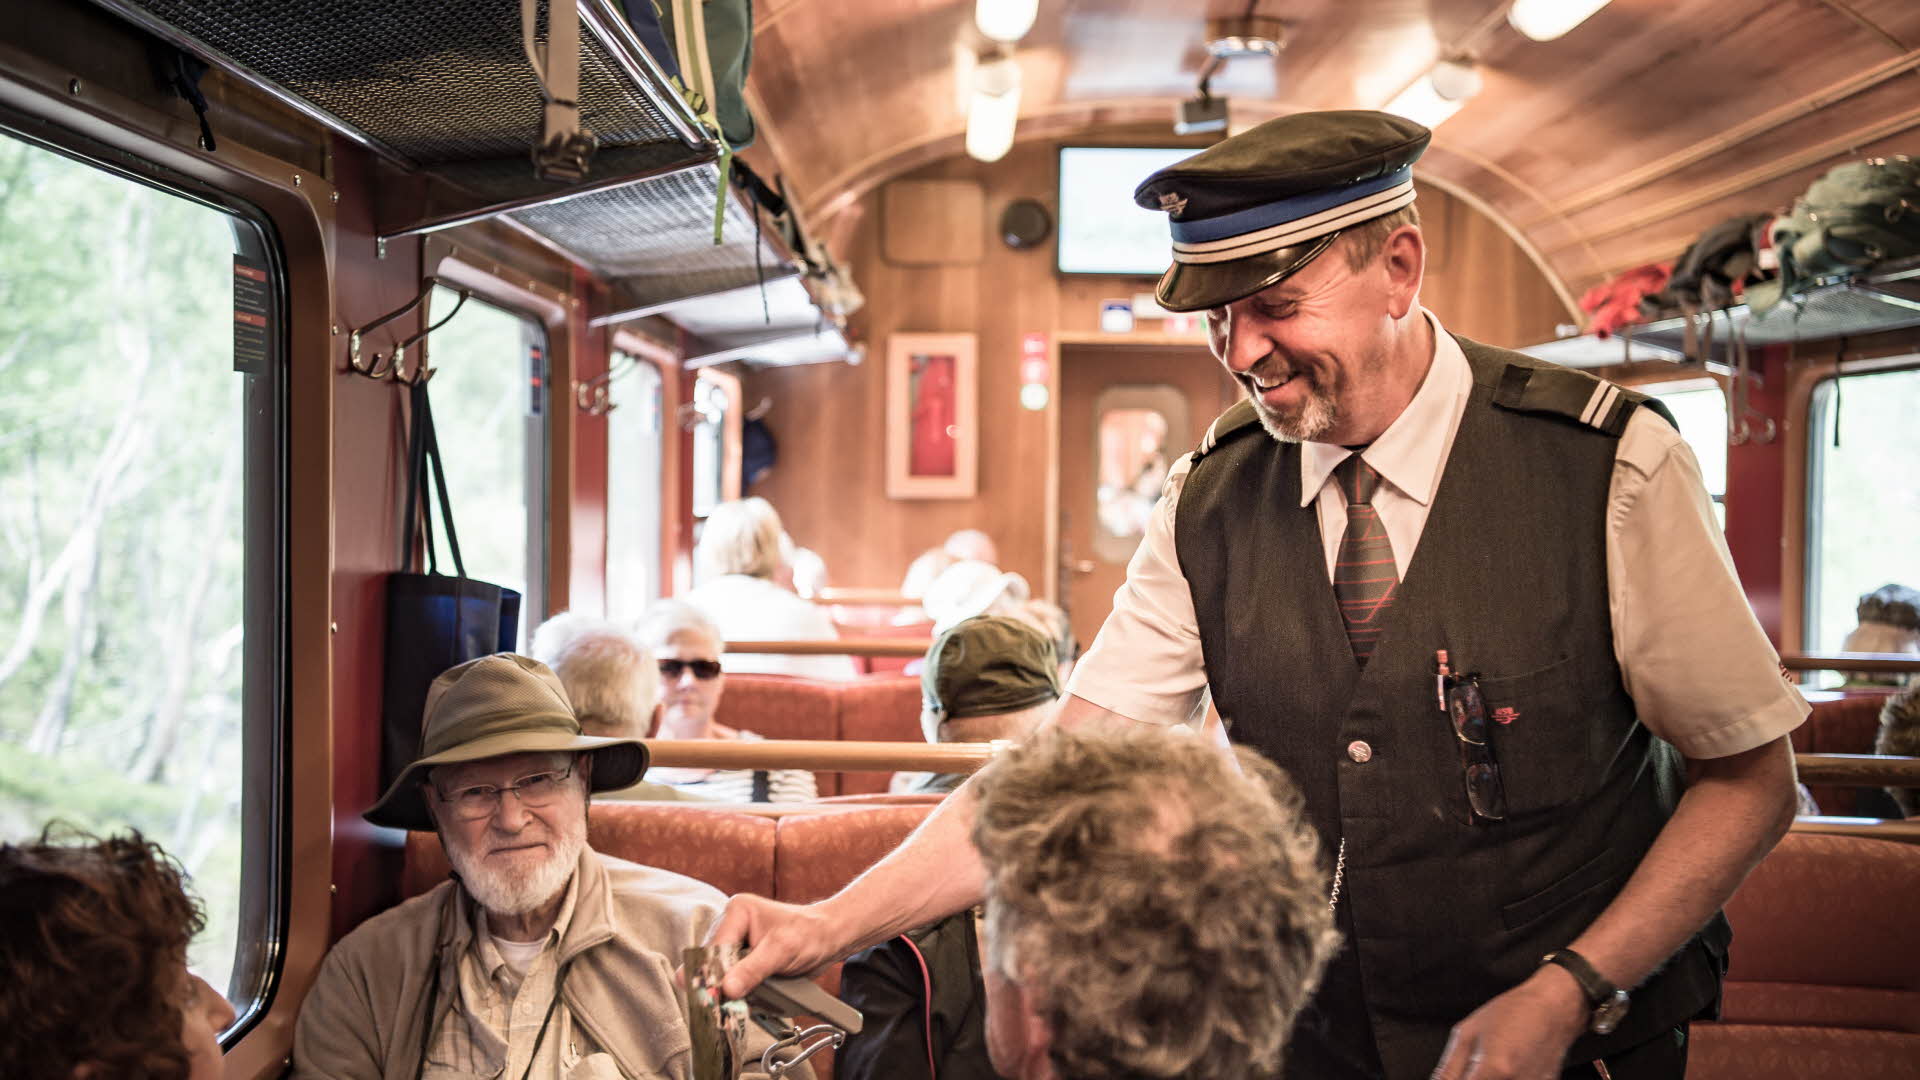 售票员面带微笑地对三名 Flam 铁路游客进行检票